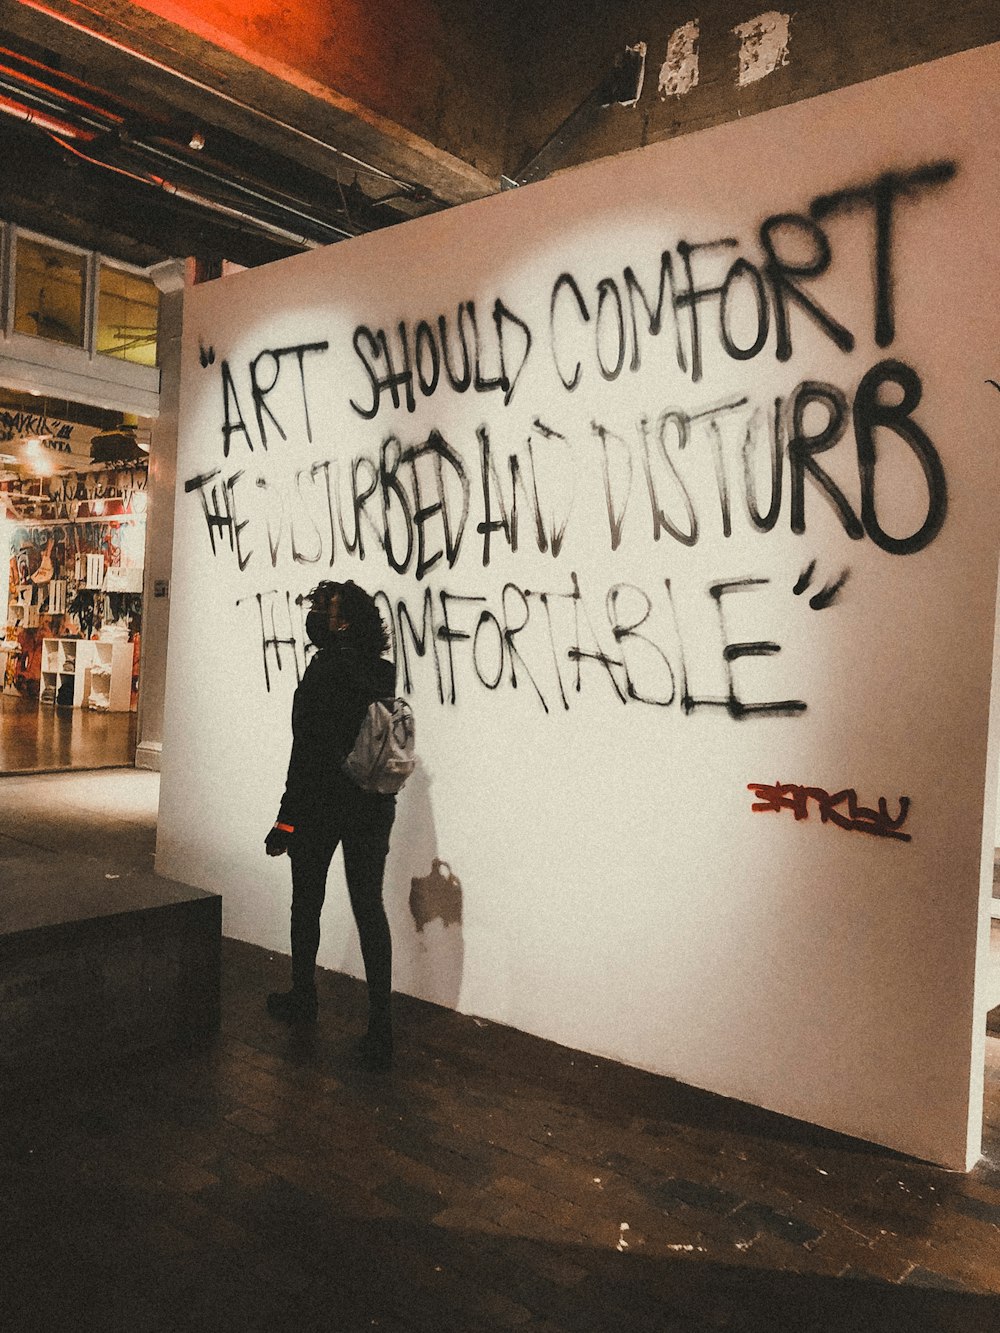 Una persona parada frente a una pared con graffiti en ella